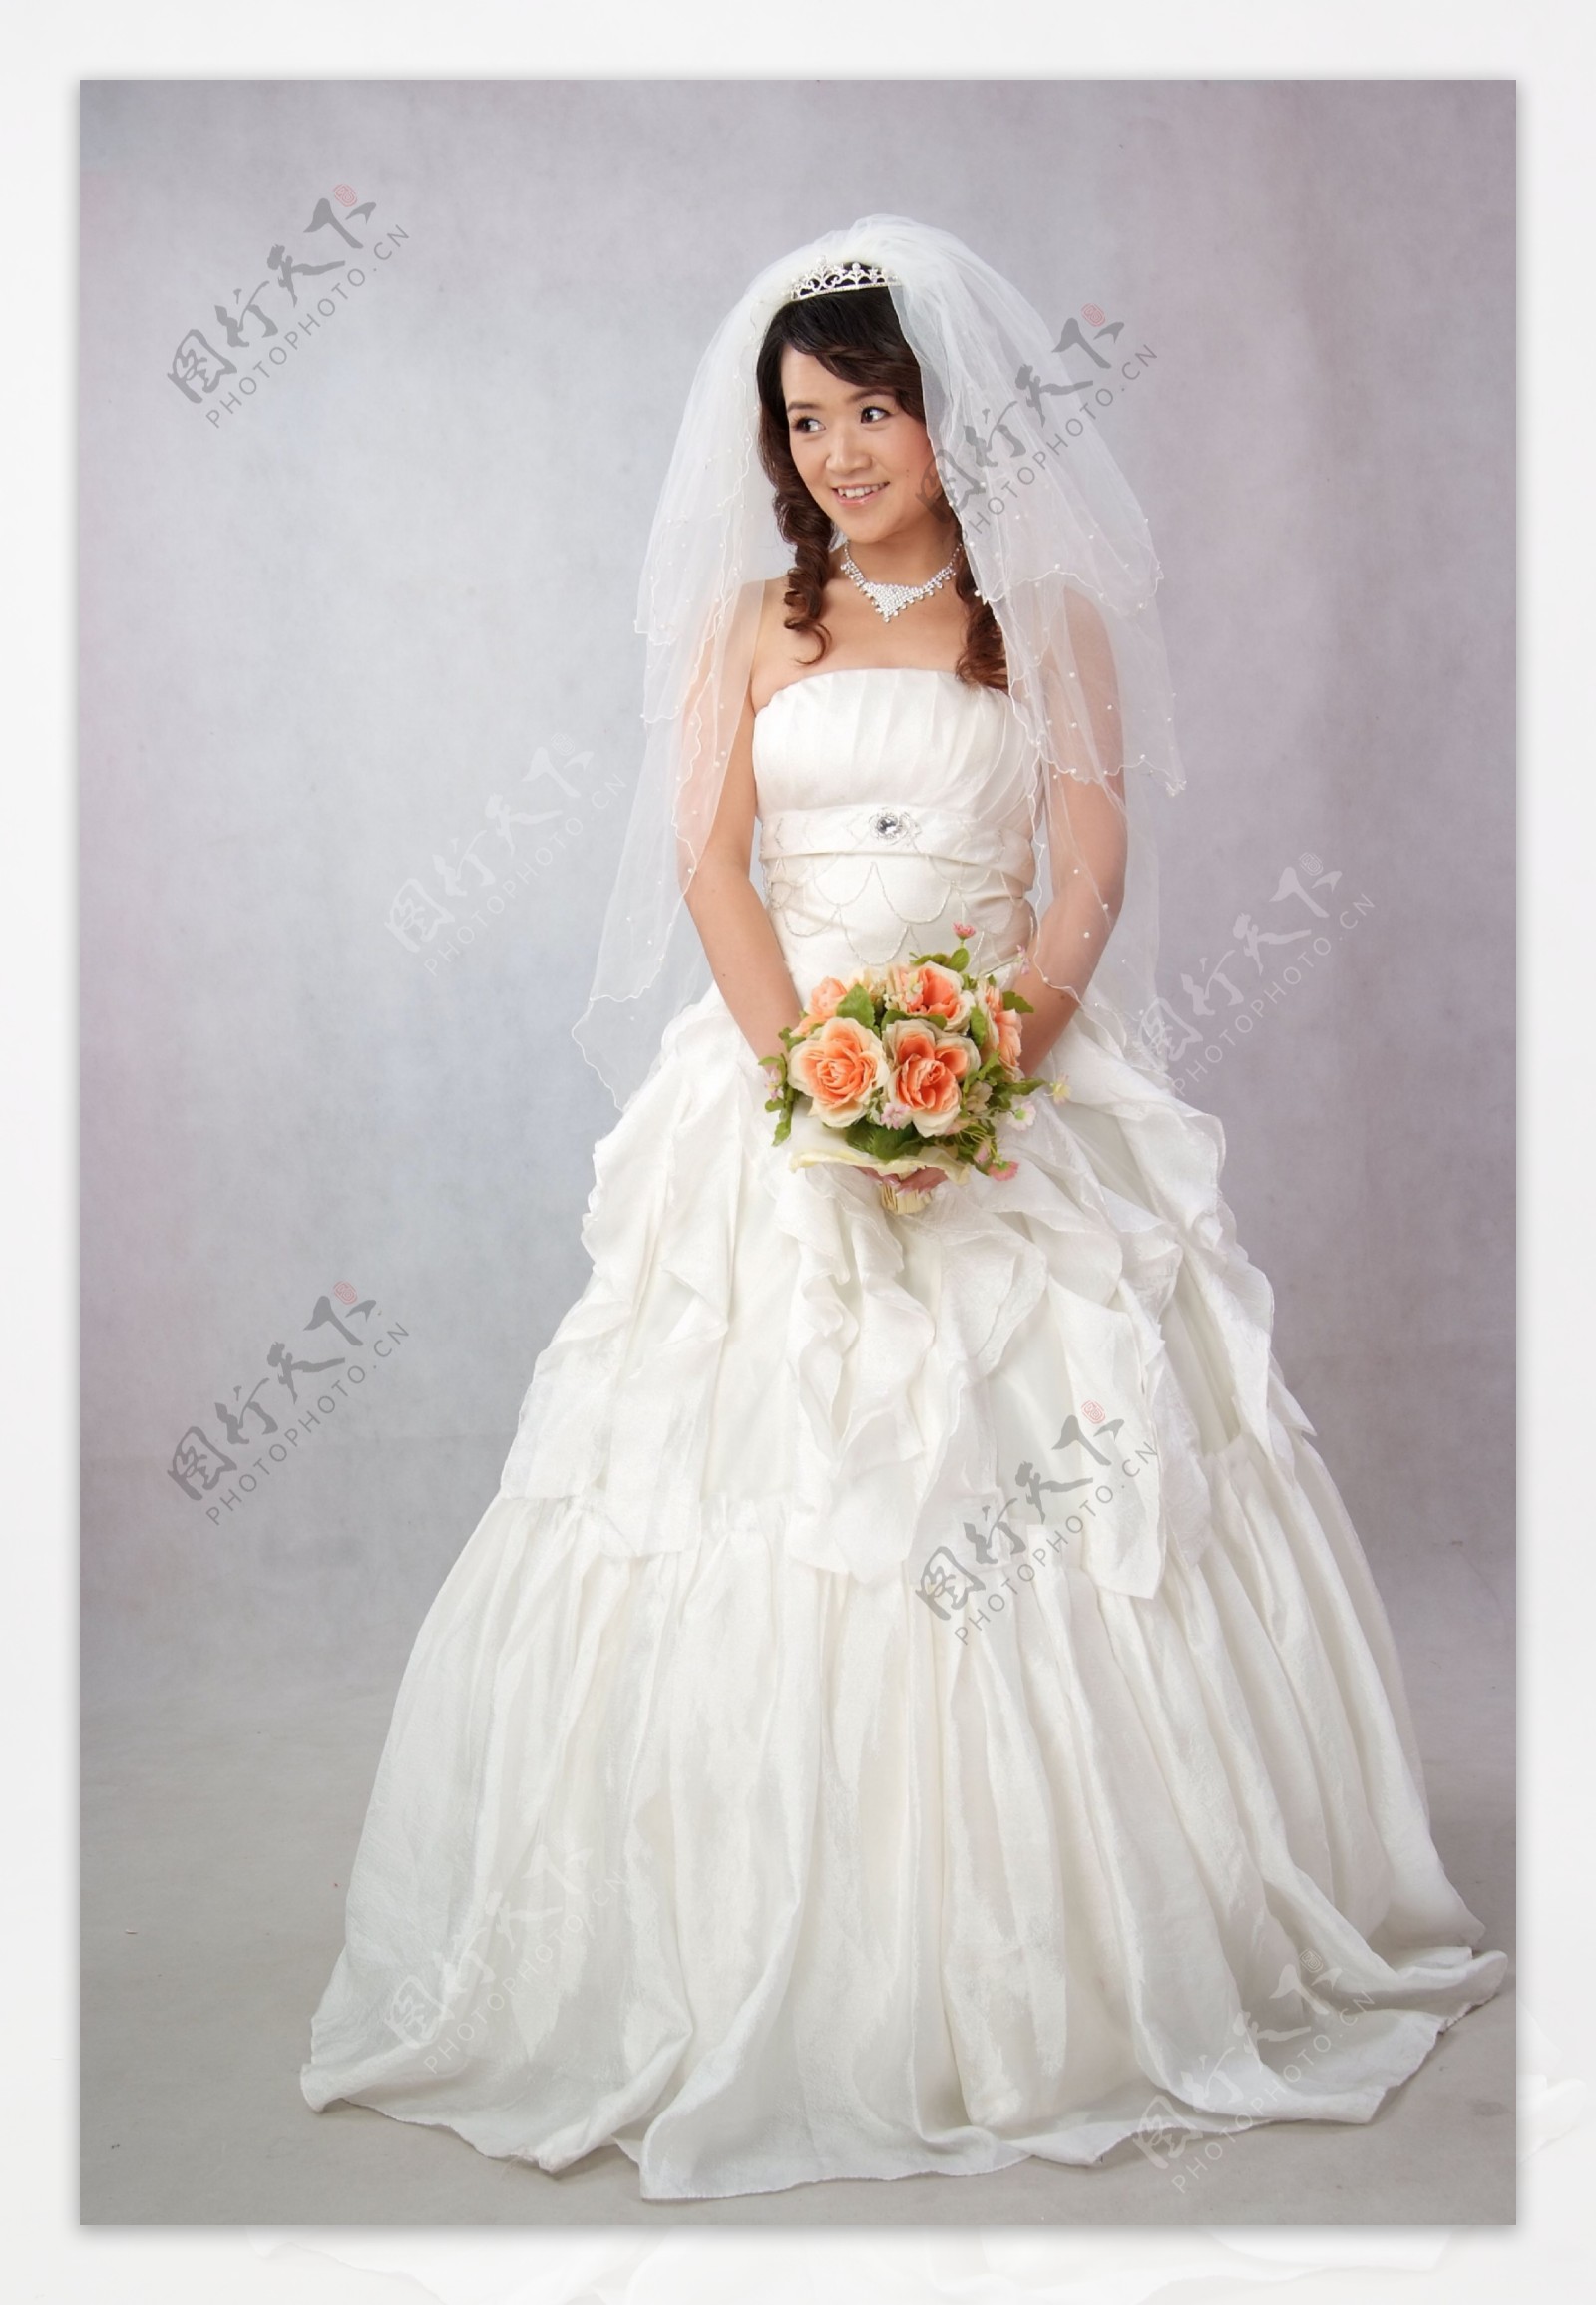 白色婚纱照图片